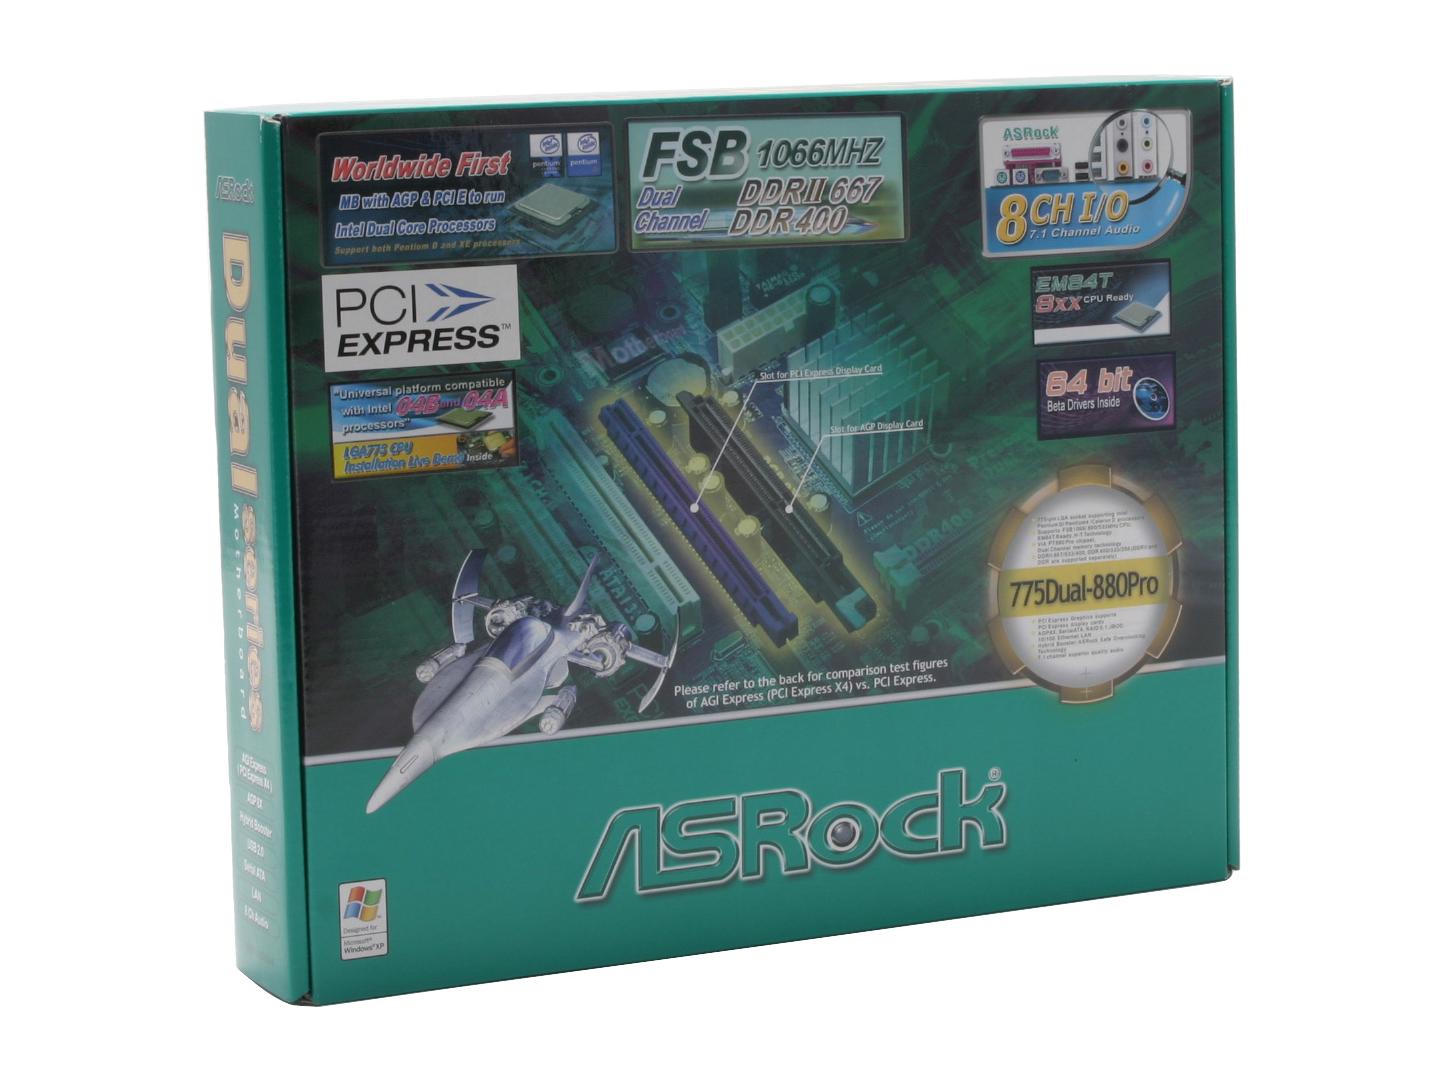 ASRock 775Dual 880Pro LGA 775 VIA PT880 PRO ATX Intel Motherboard